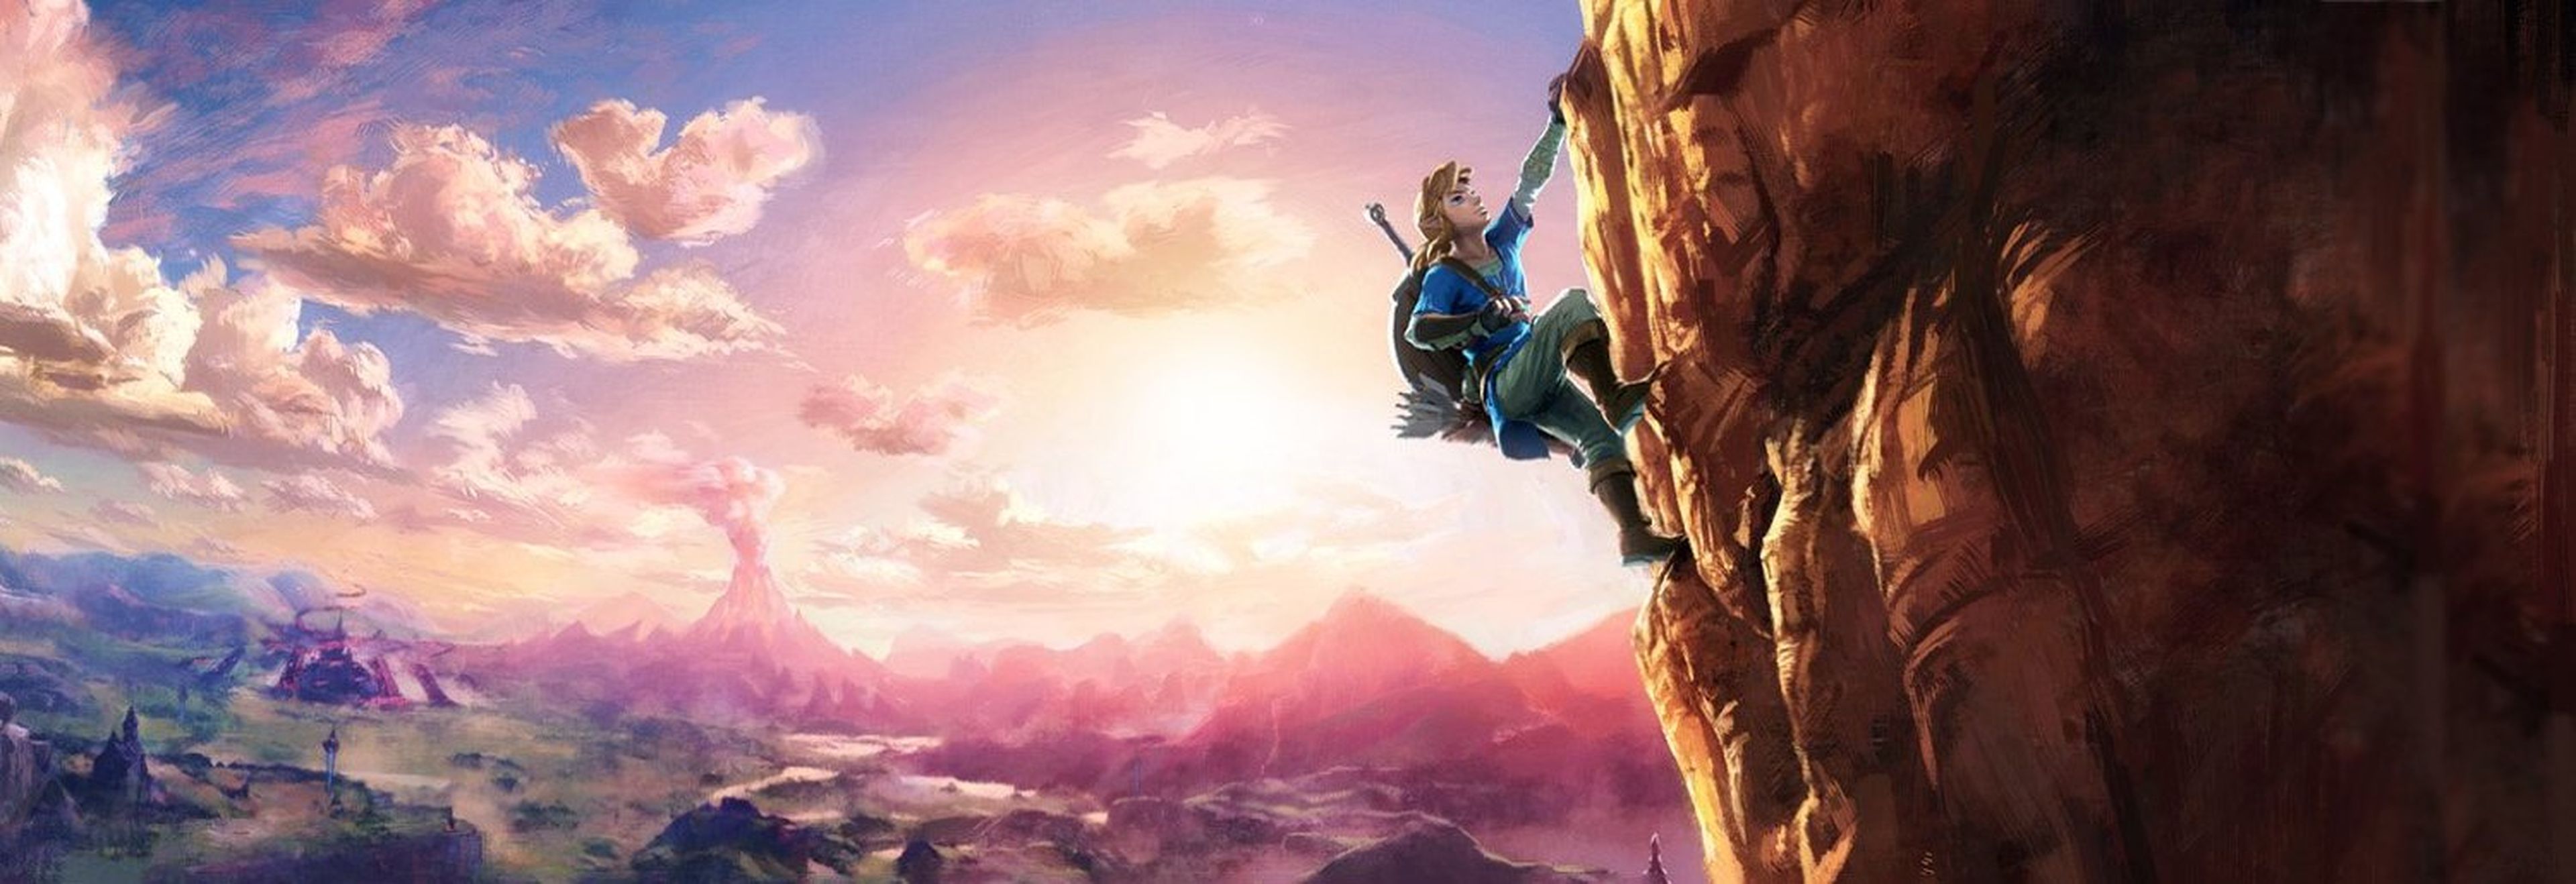 The Legend of Zelda Wii U/NX - Nueva imagen